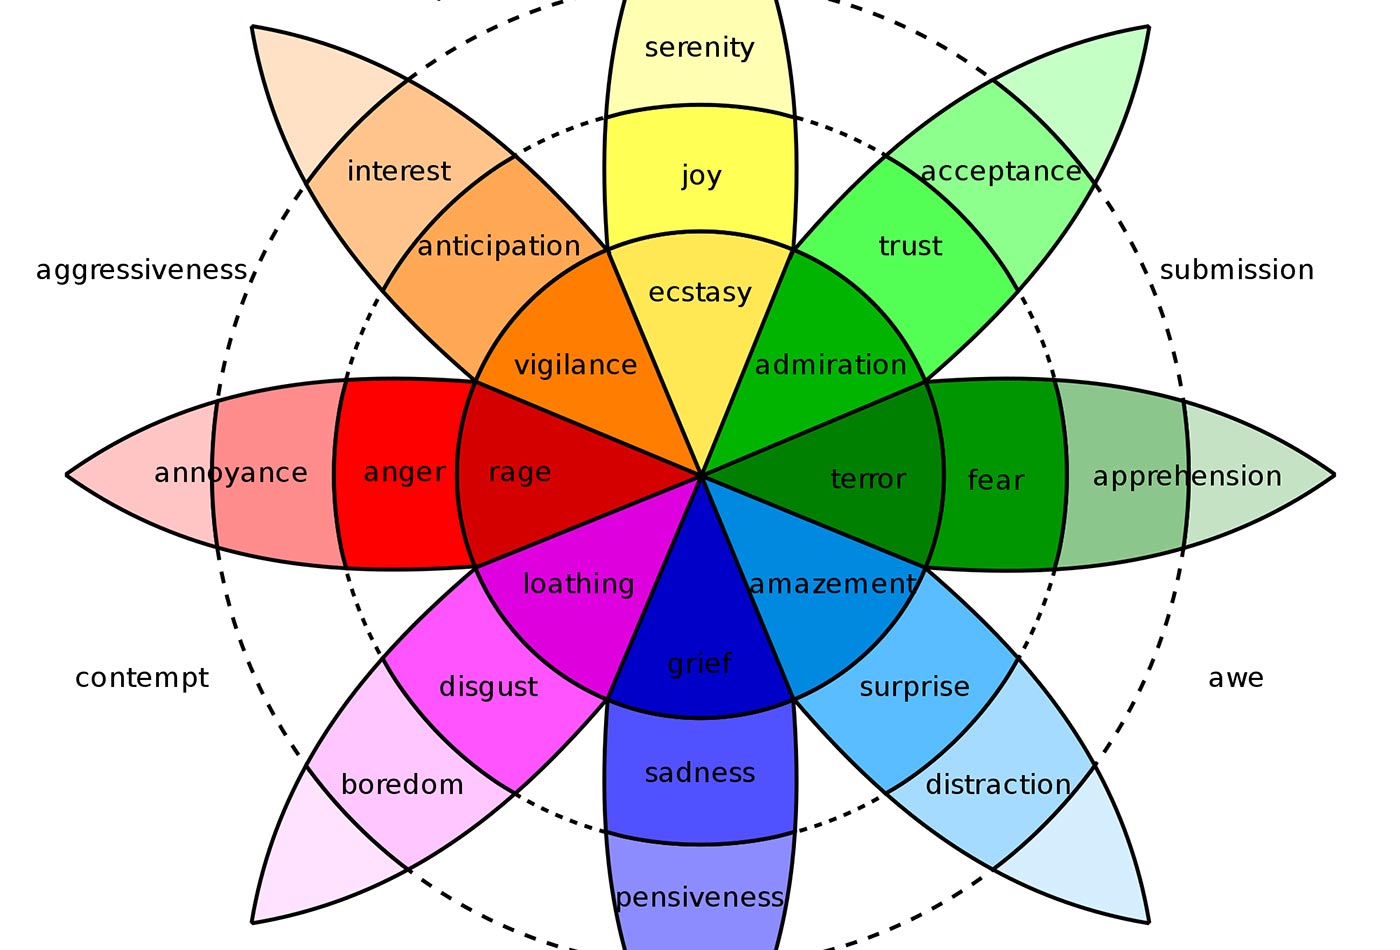 Robert Plutchik's Wheel of Emotions